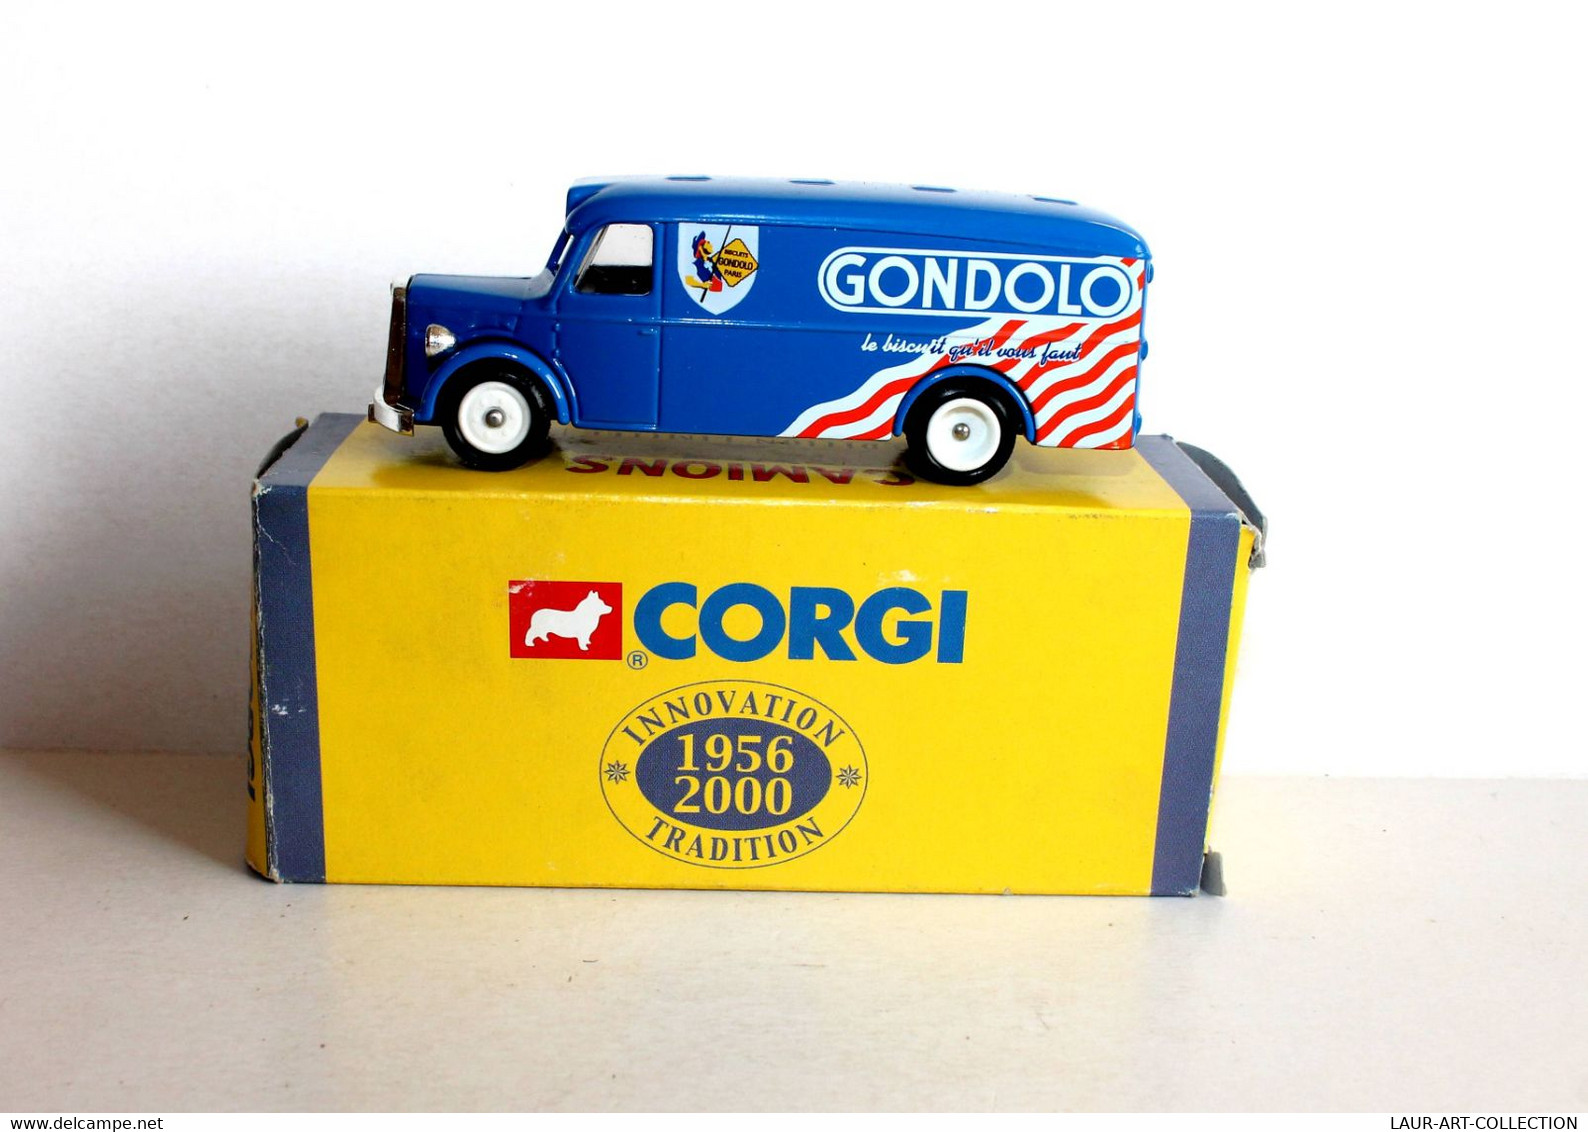 CORGI - CAMION DE LIVRAISON MAN VAN 1949, PUB GONDOLO, CAMIONS D'ANTAN 1956-2000 - AUTOMOBILE MINIATURE (2811.33) - Corgi Toys